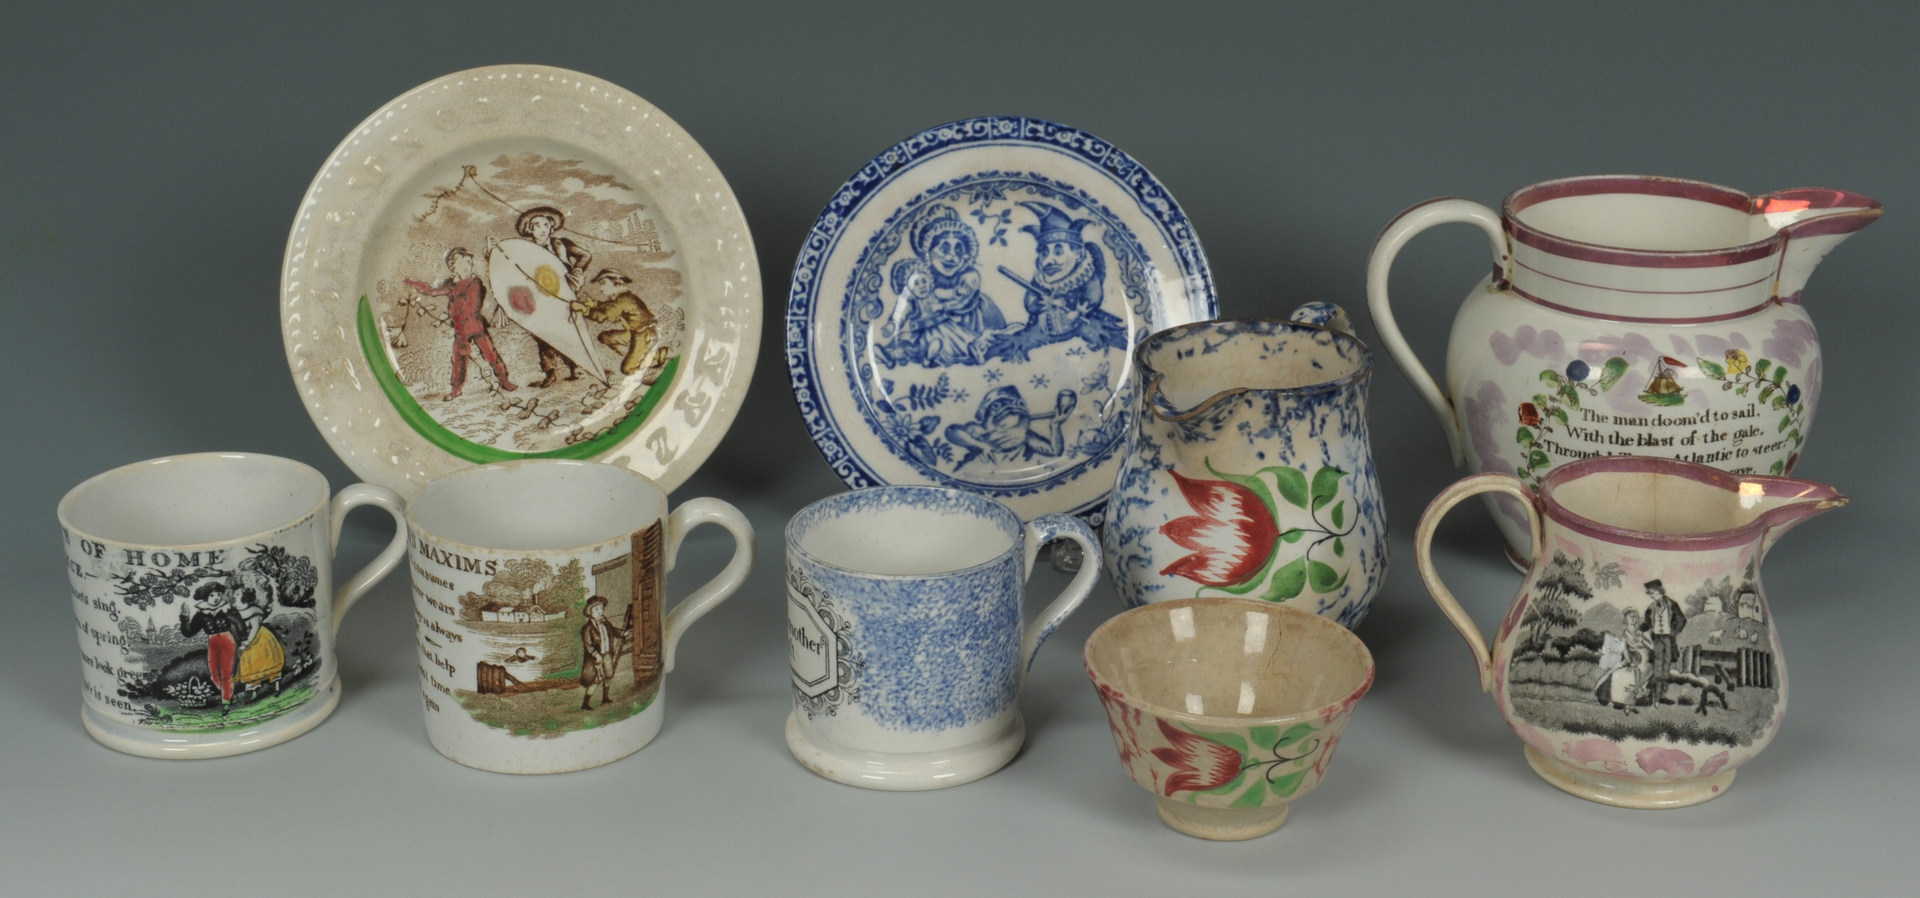 Lot 254: 19th c. ceramics, Sunderland & Spatterware